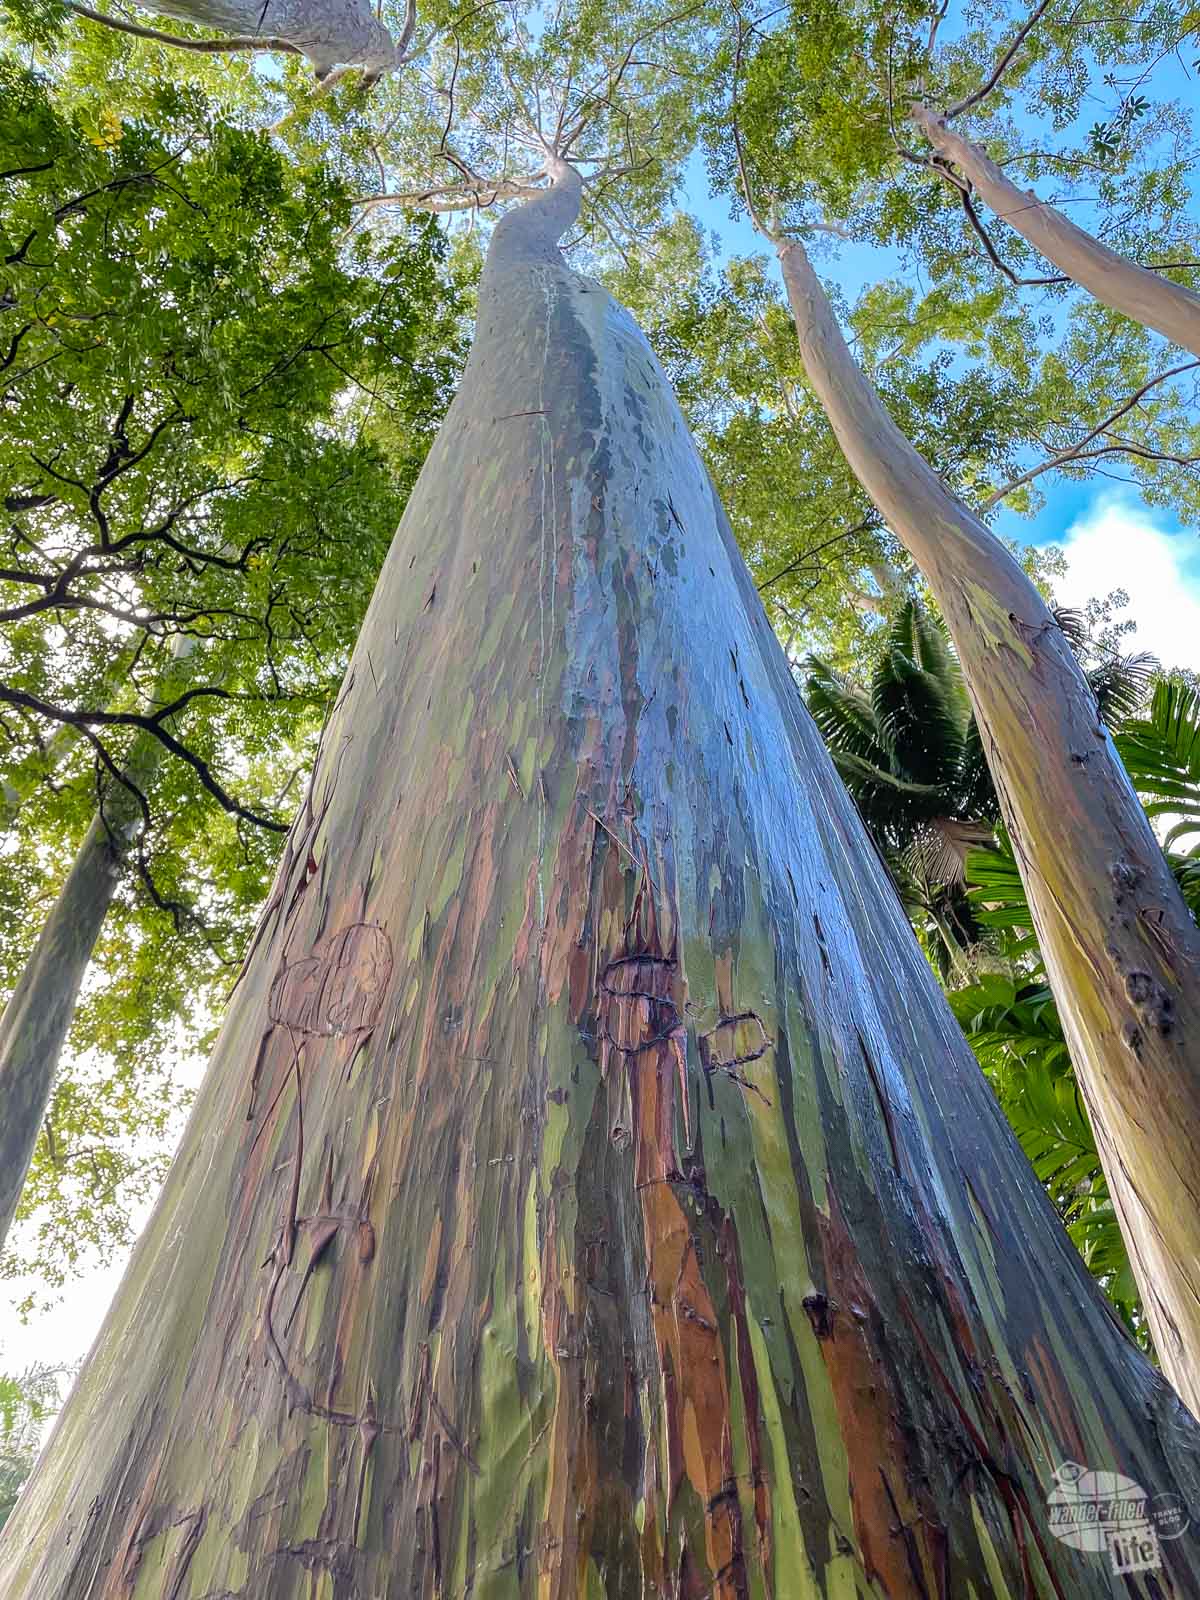 Rainbow Eucalyptus trees at the Ke'anae Arboretum.